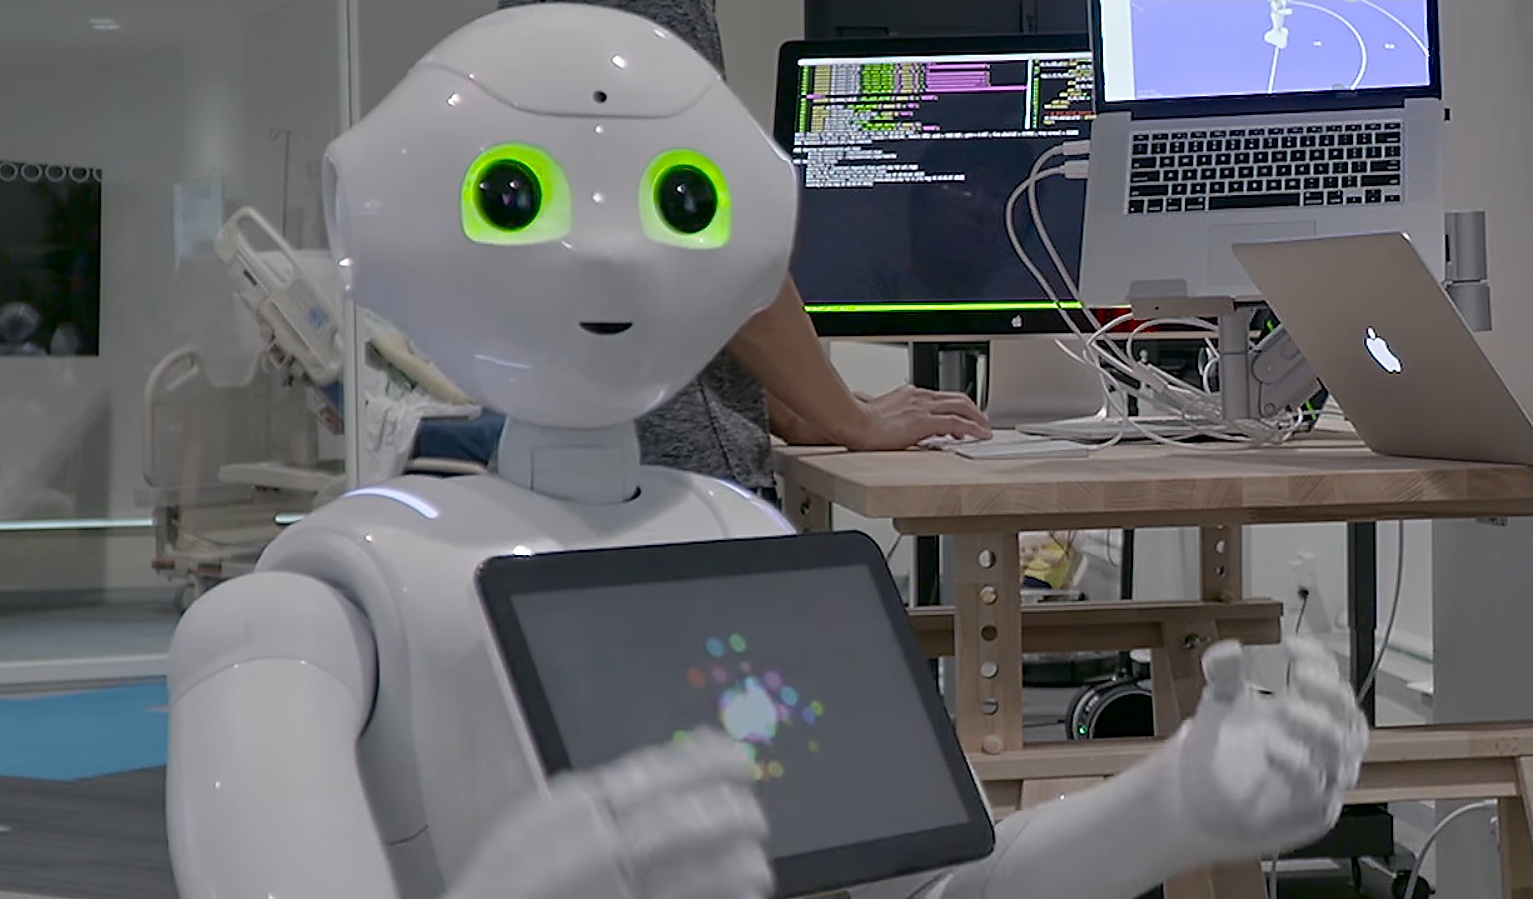 Робот искусственный интеллект говорящий. Робот онколог диагност IBM Watson. Робот Ватсон. Суперкомпьютер IBM Watson. Онколог-диагност (IBM Watson).